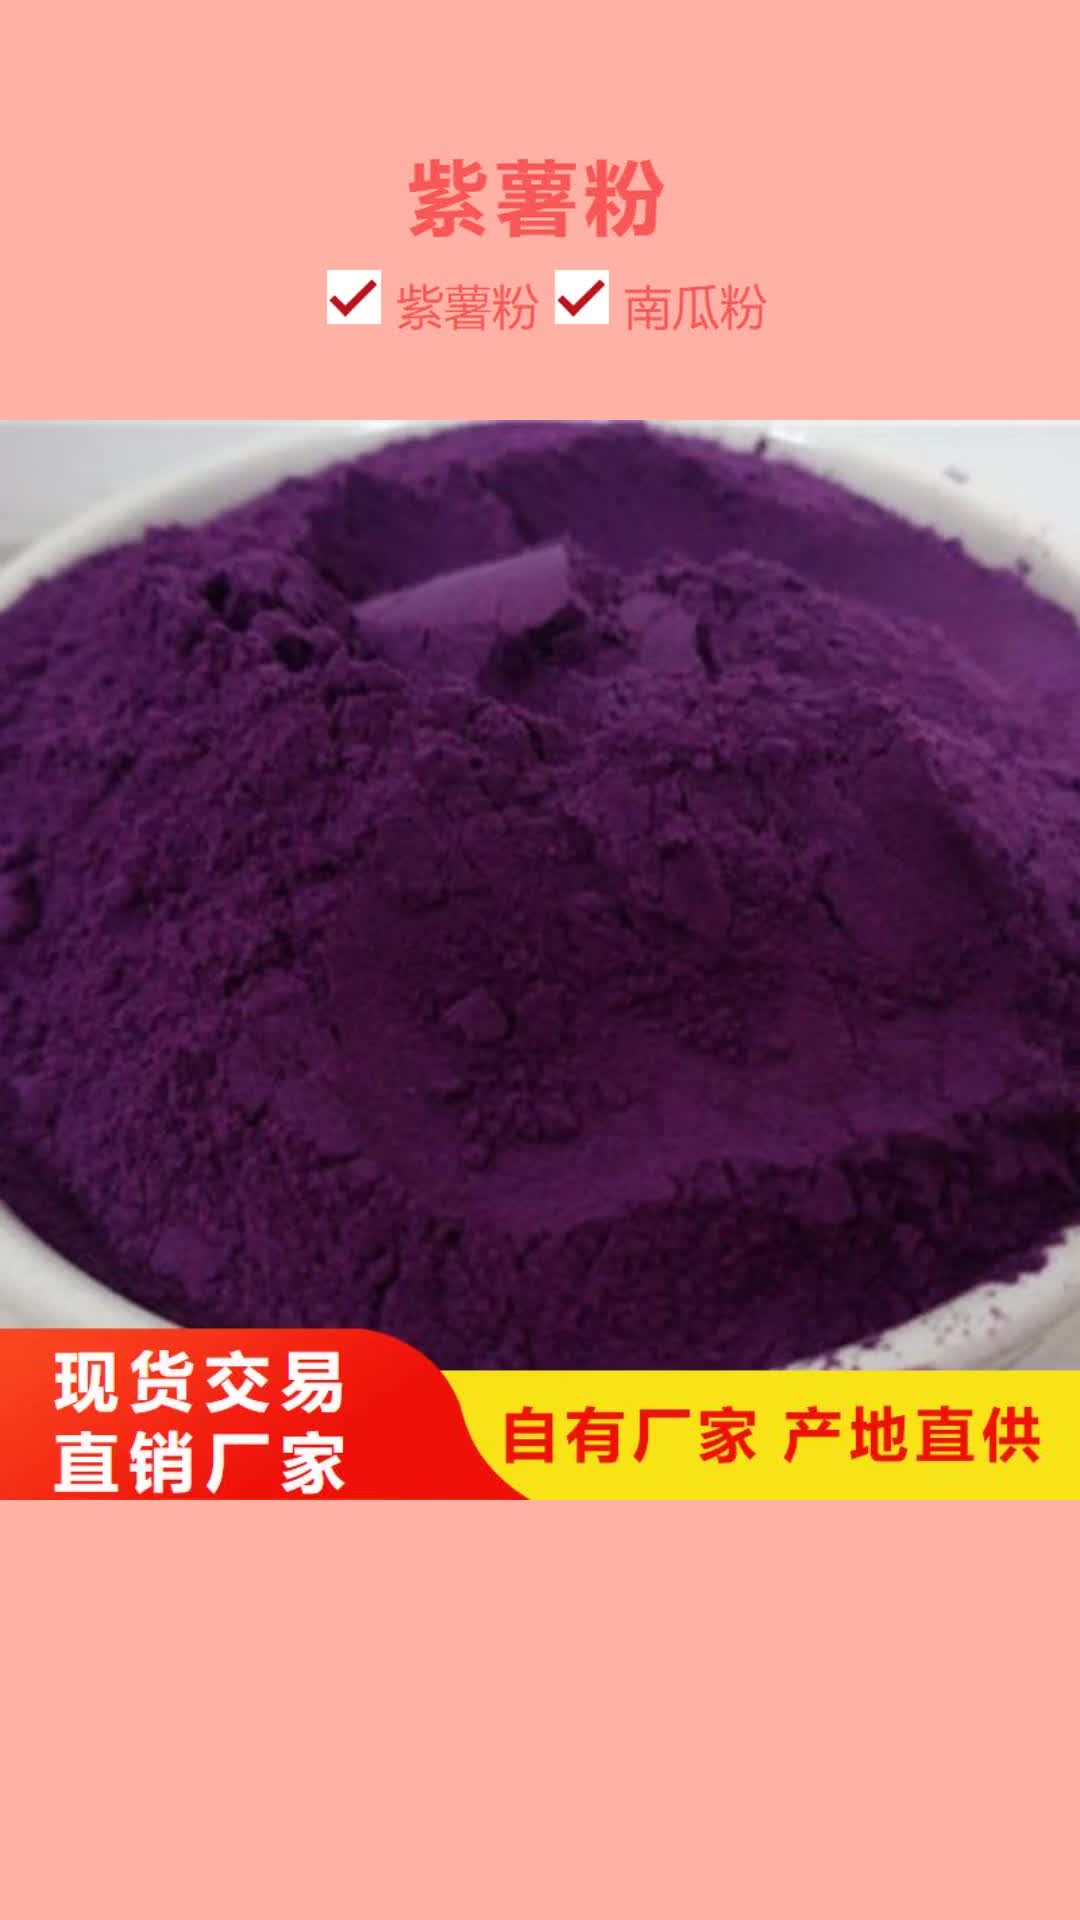 武汉 紫薯粉,【灵芝菌种】货到付款